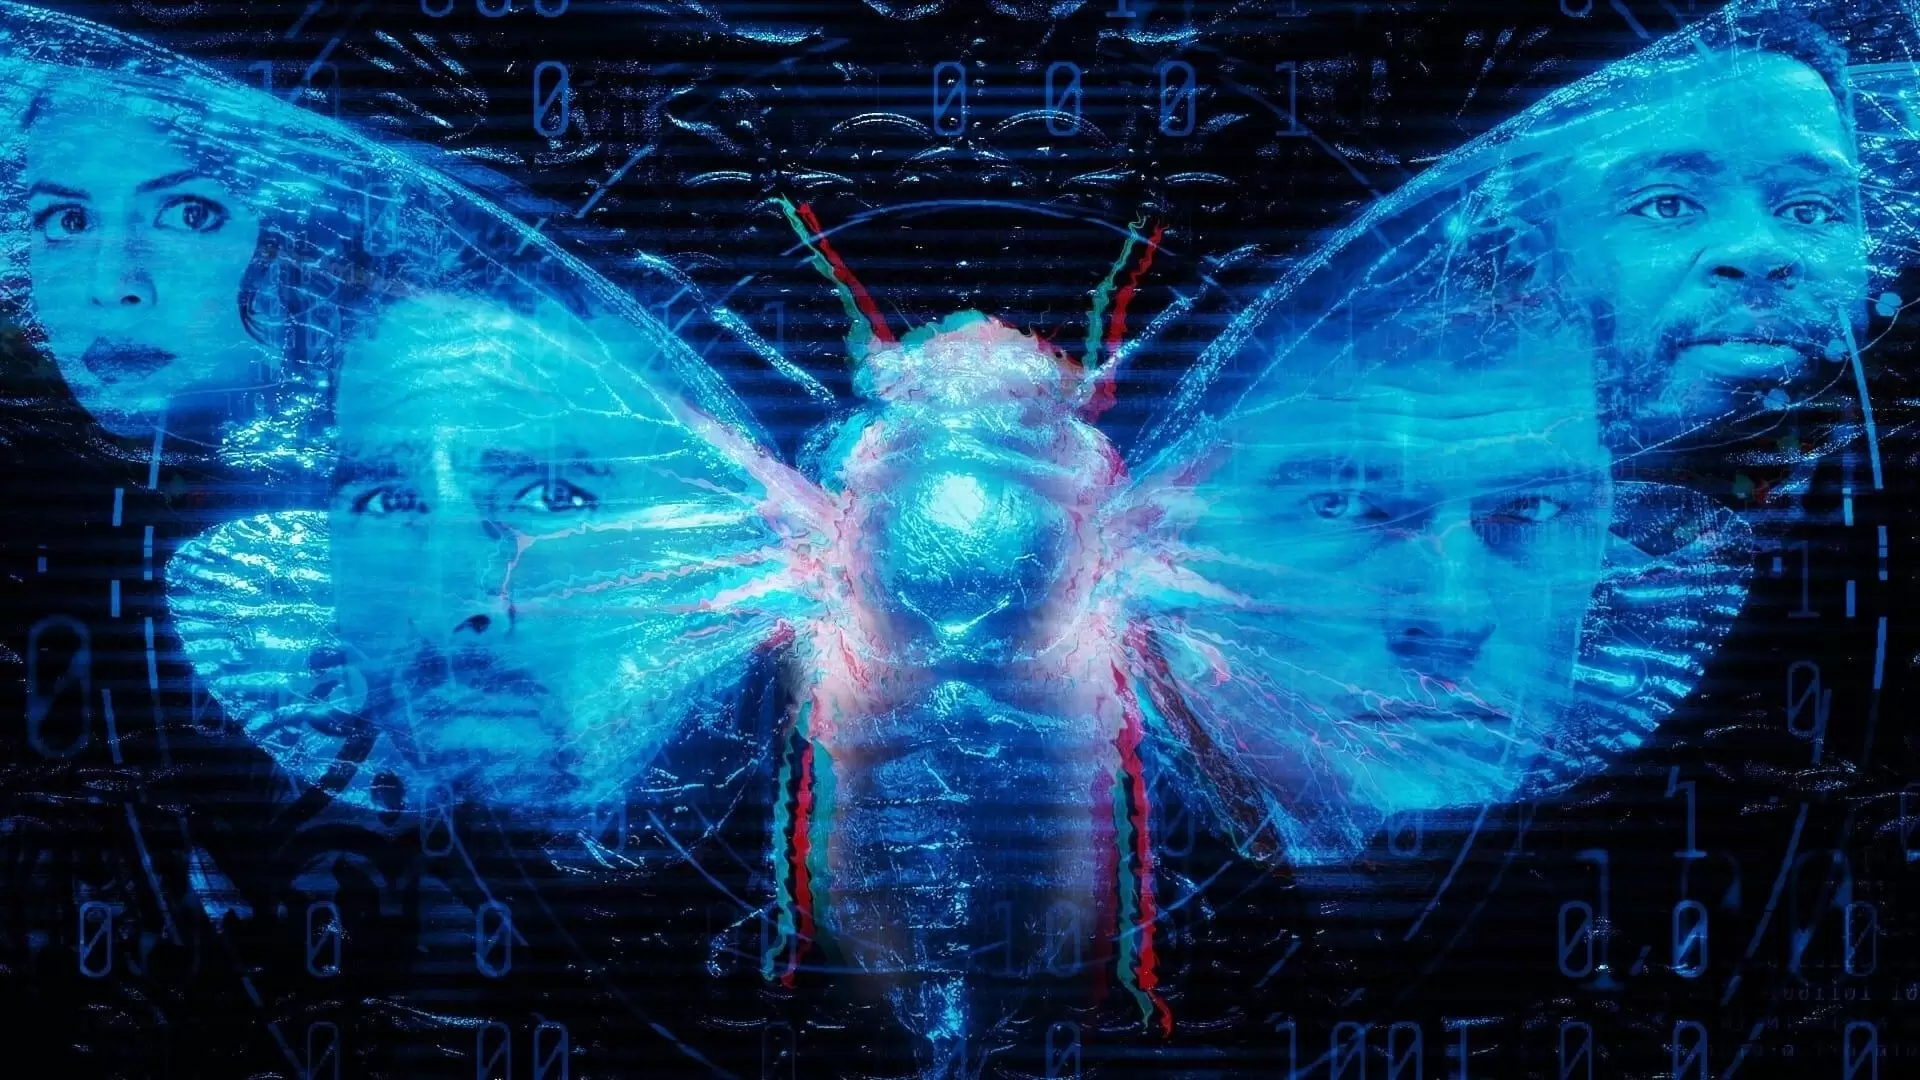 دانلود فیلم Dark Web: Cicada 3301 2021 (دارک وب: جیرجیرک) با زیرنویس فارسی